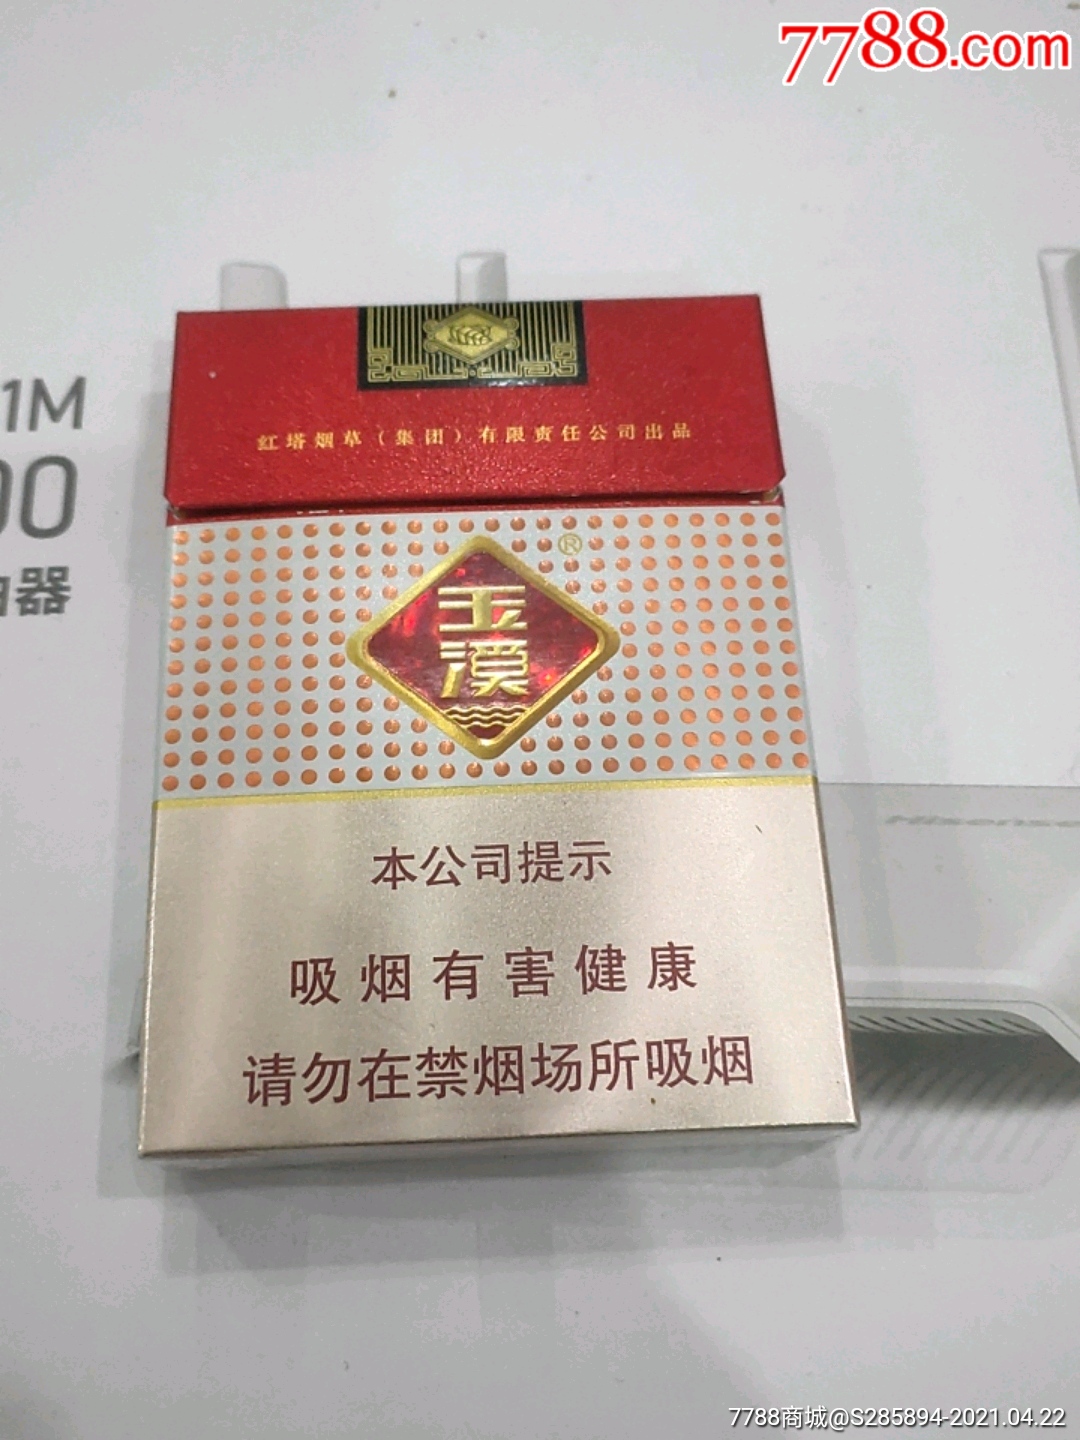 玉溪鑫中支-价格:3元-se79734020-烟标/烟盒-零售